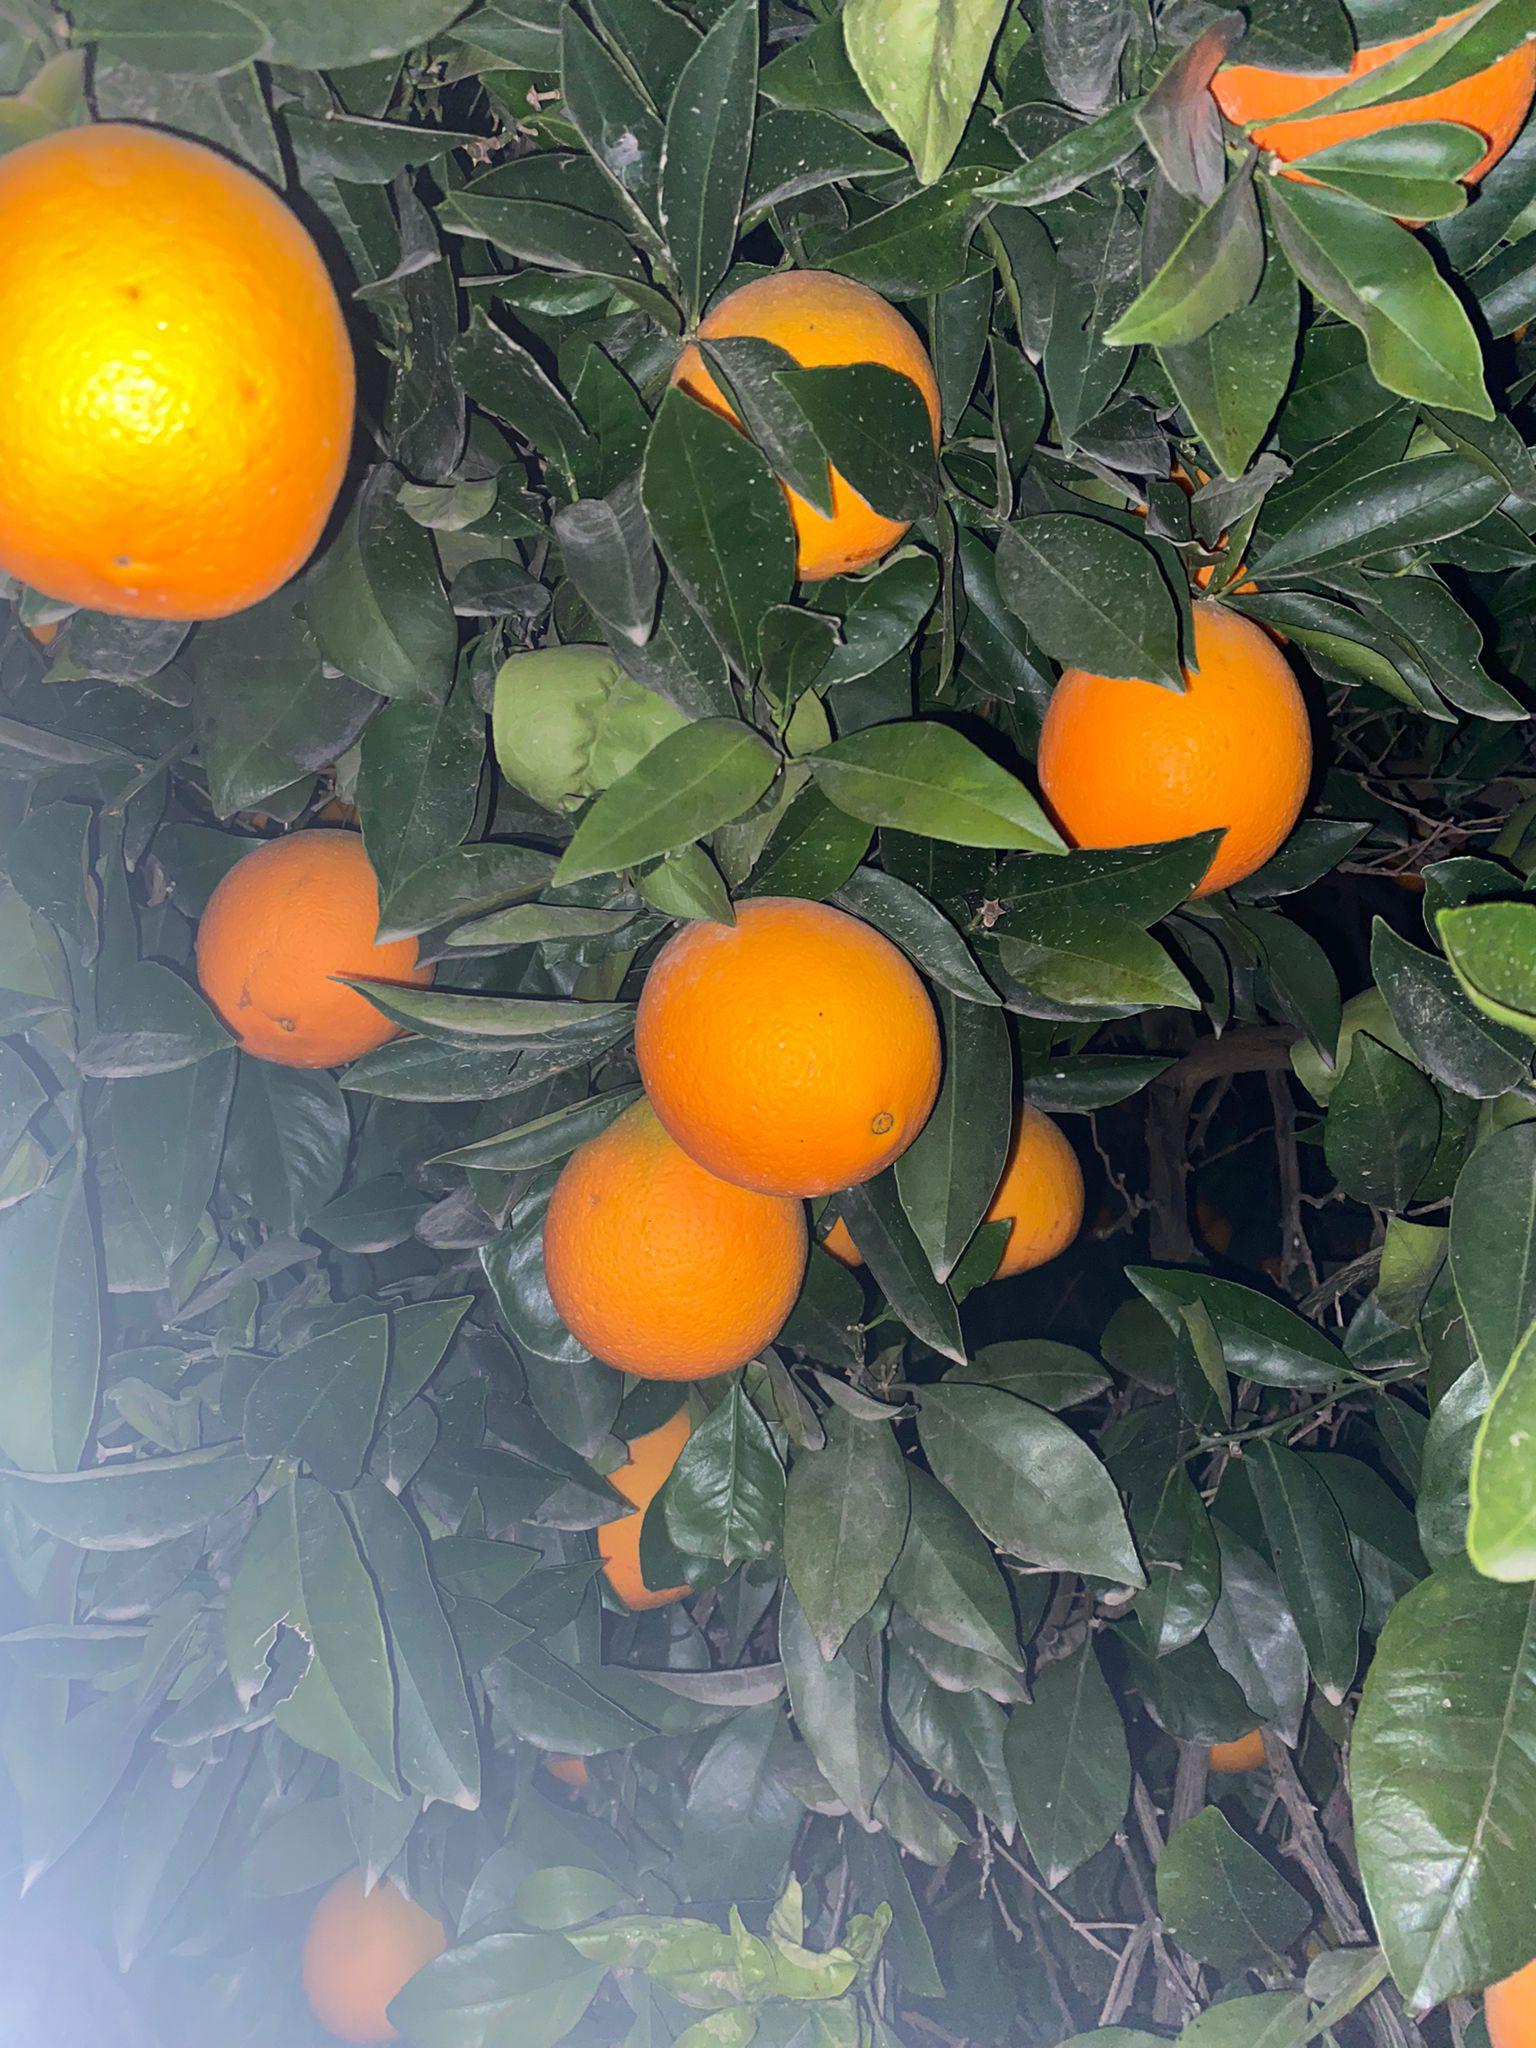 Portakal - Üretici onur TAMDOĞAN 2.2 tl fiyat ile 100.000 kilogram washington navel çeşidi portakal satmak istiyor